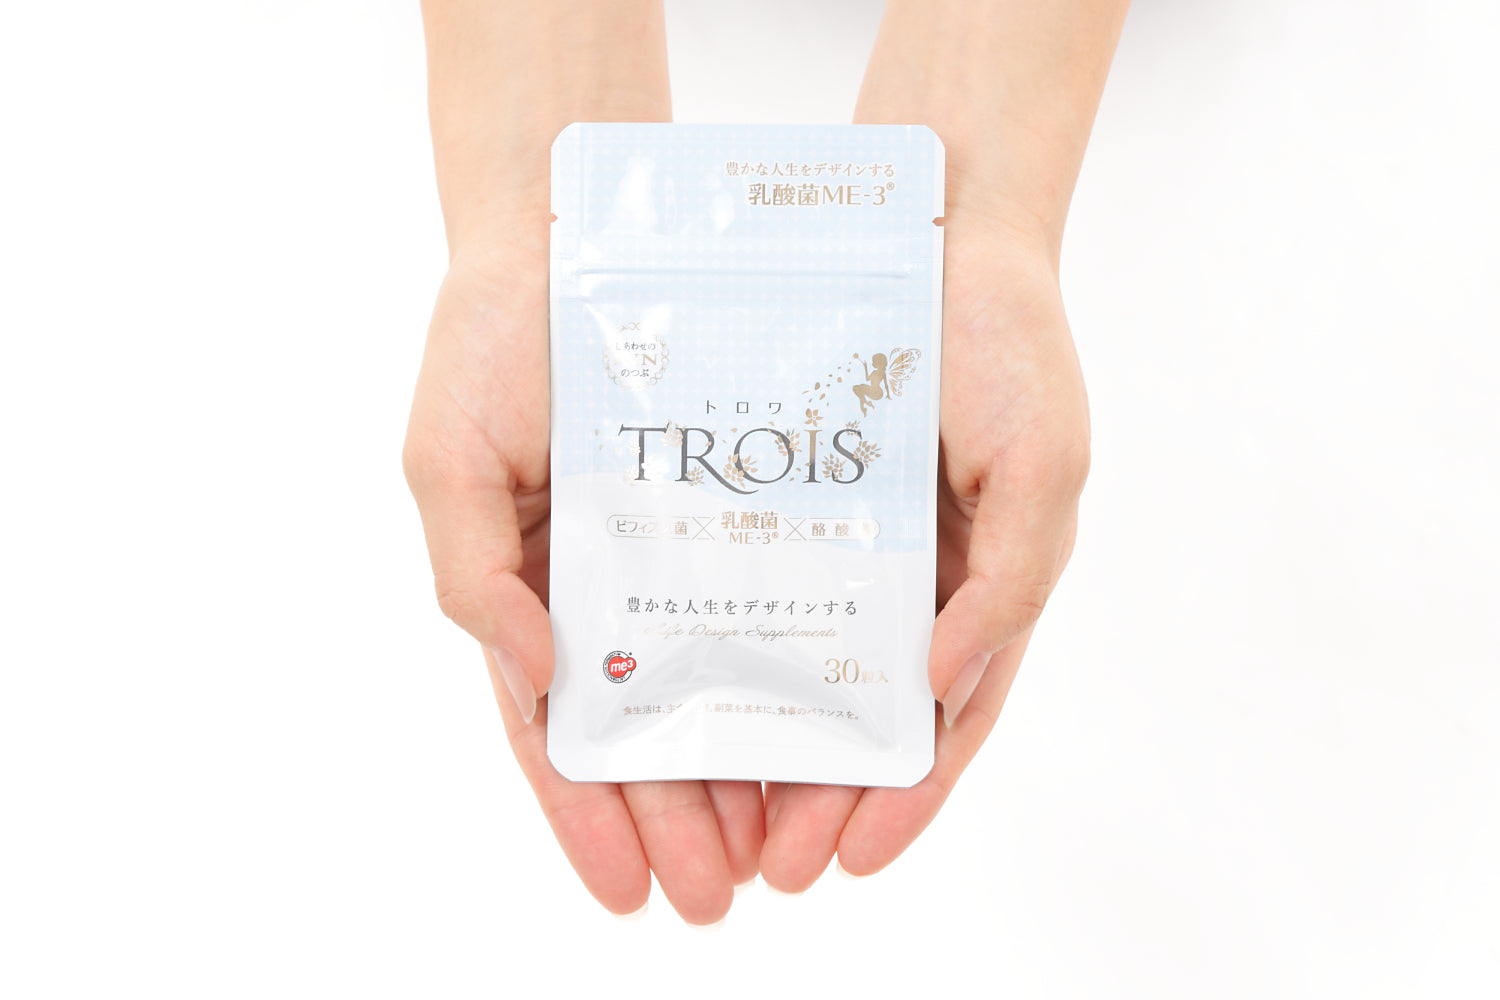 TROIS（トロワ）- ビフィズス菌、乳酸菌、酪酸ビフィズス菌を配合したサプリメント（30粒）